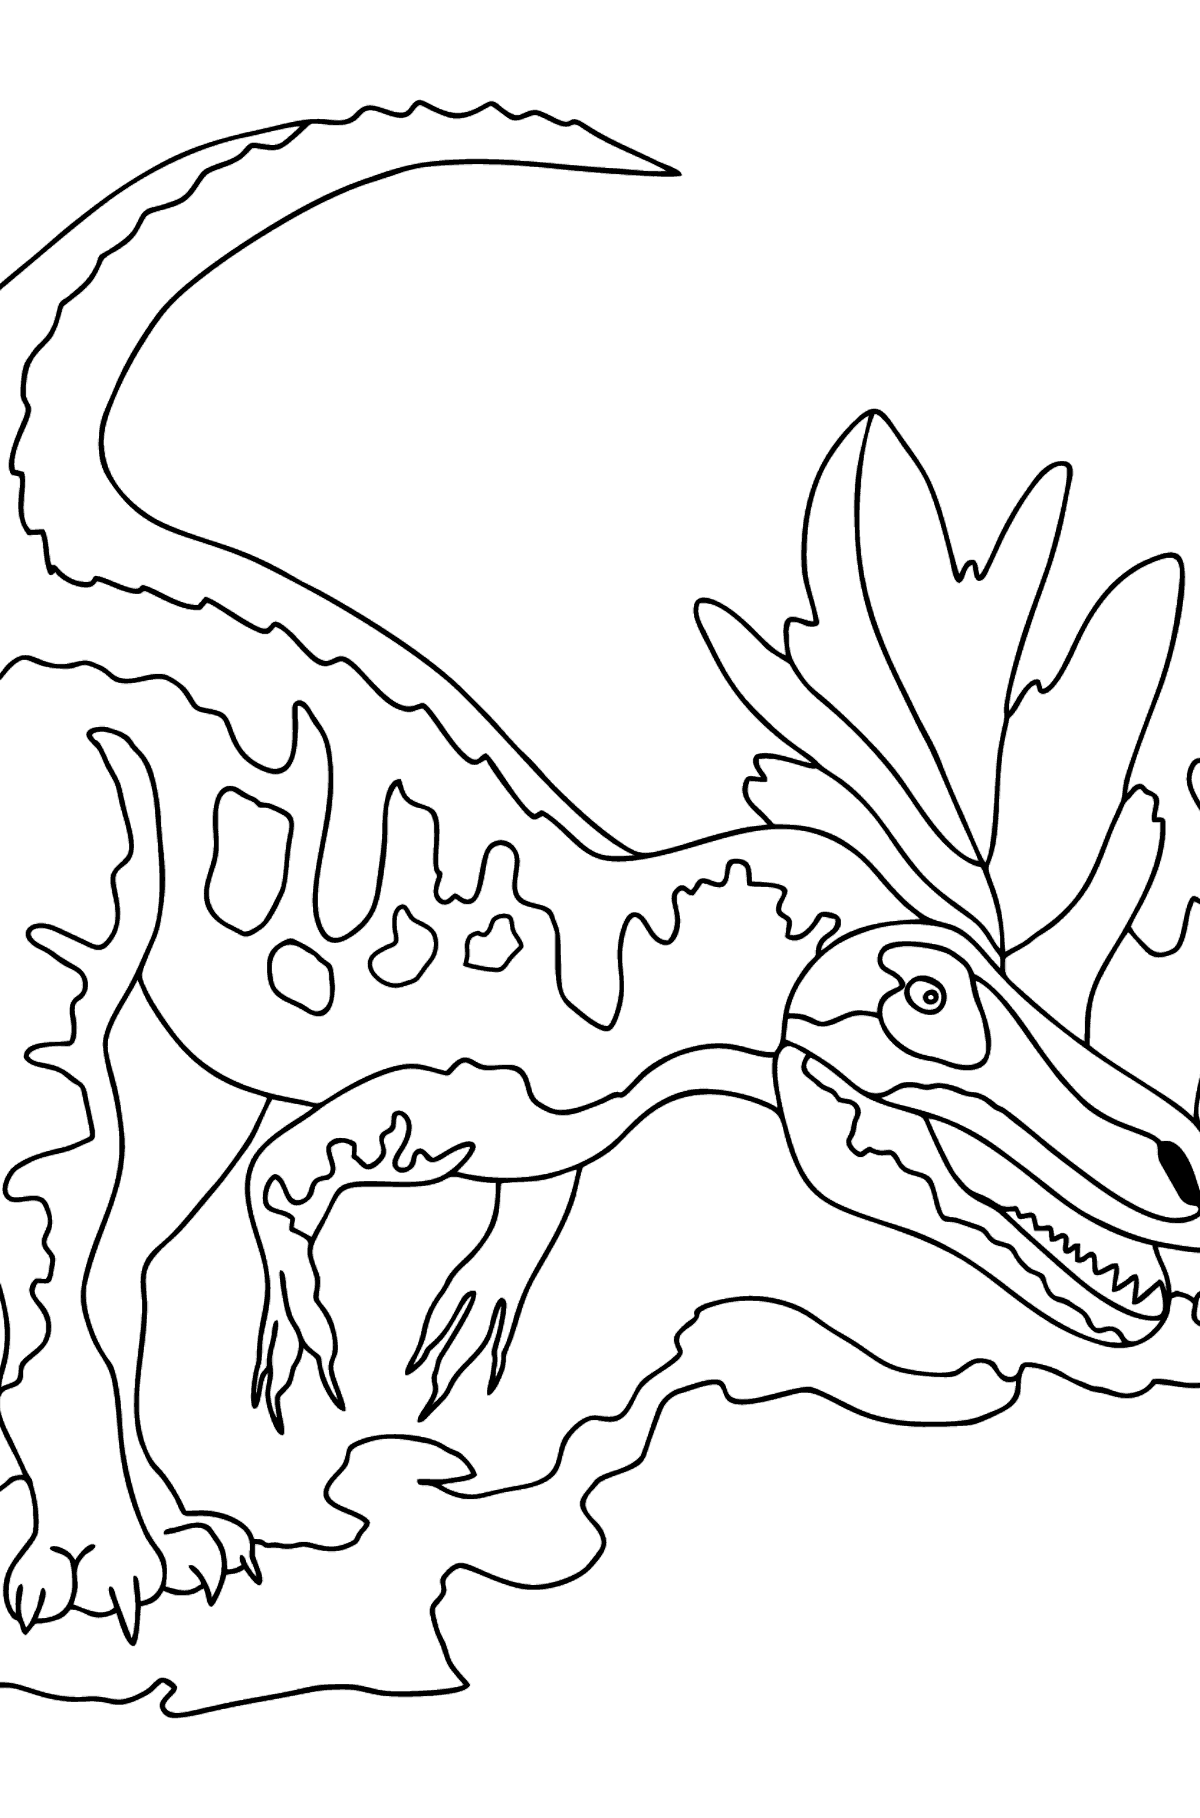 Раскраска Динозавр - Картинки для Детей